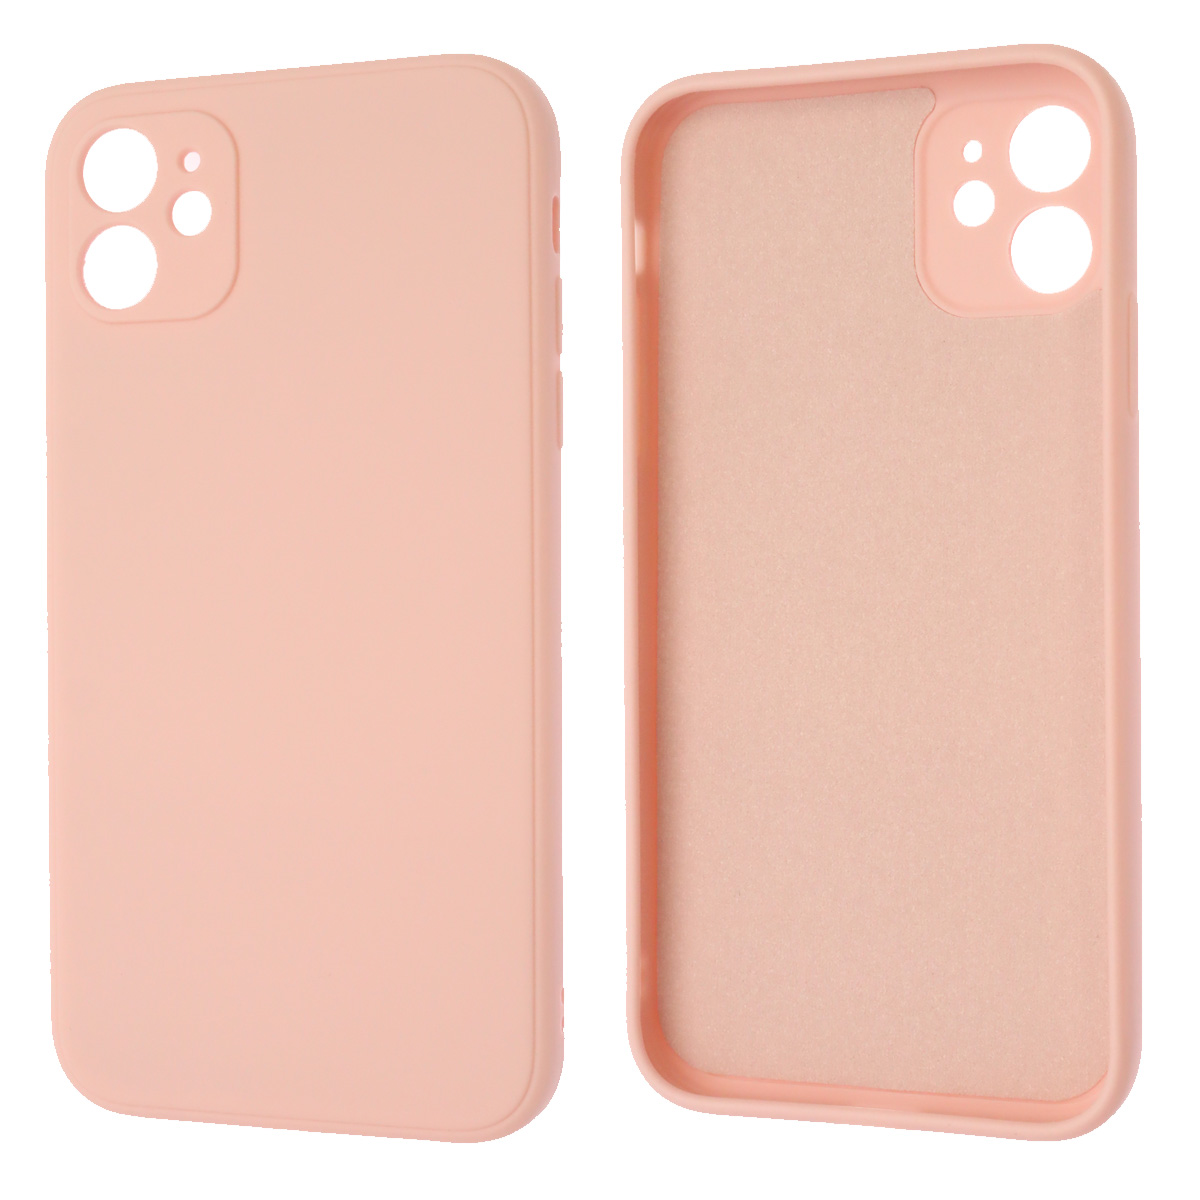 Чехол накладка для APPLE iPhone 11, силикон, бархат, цвет розовый песок